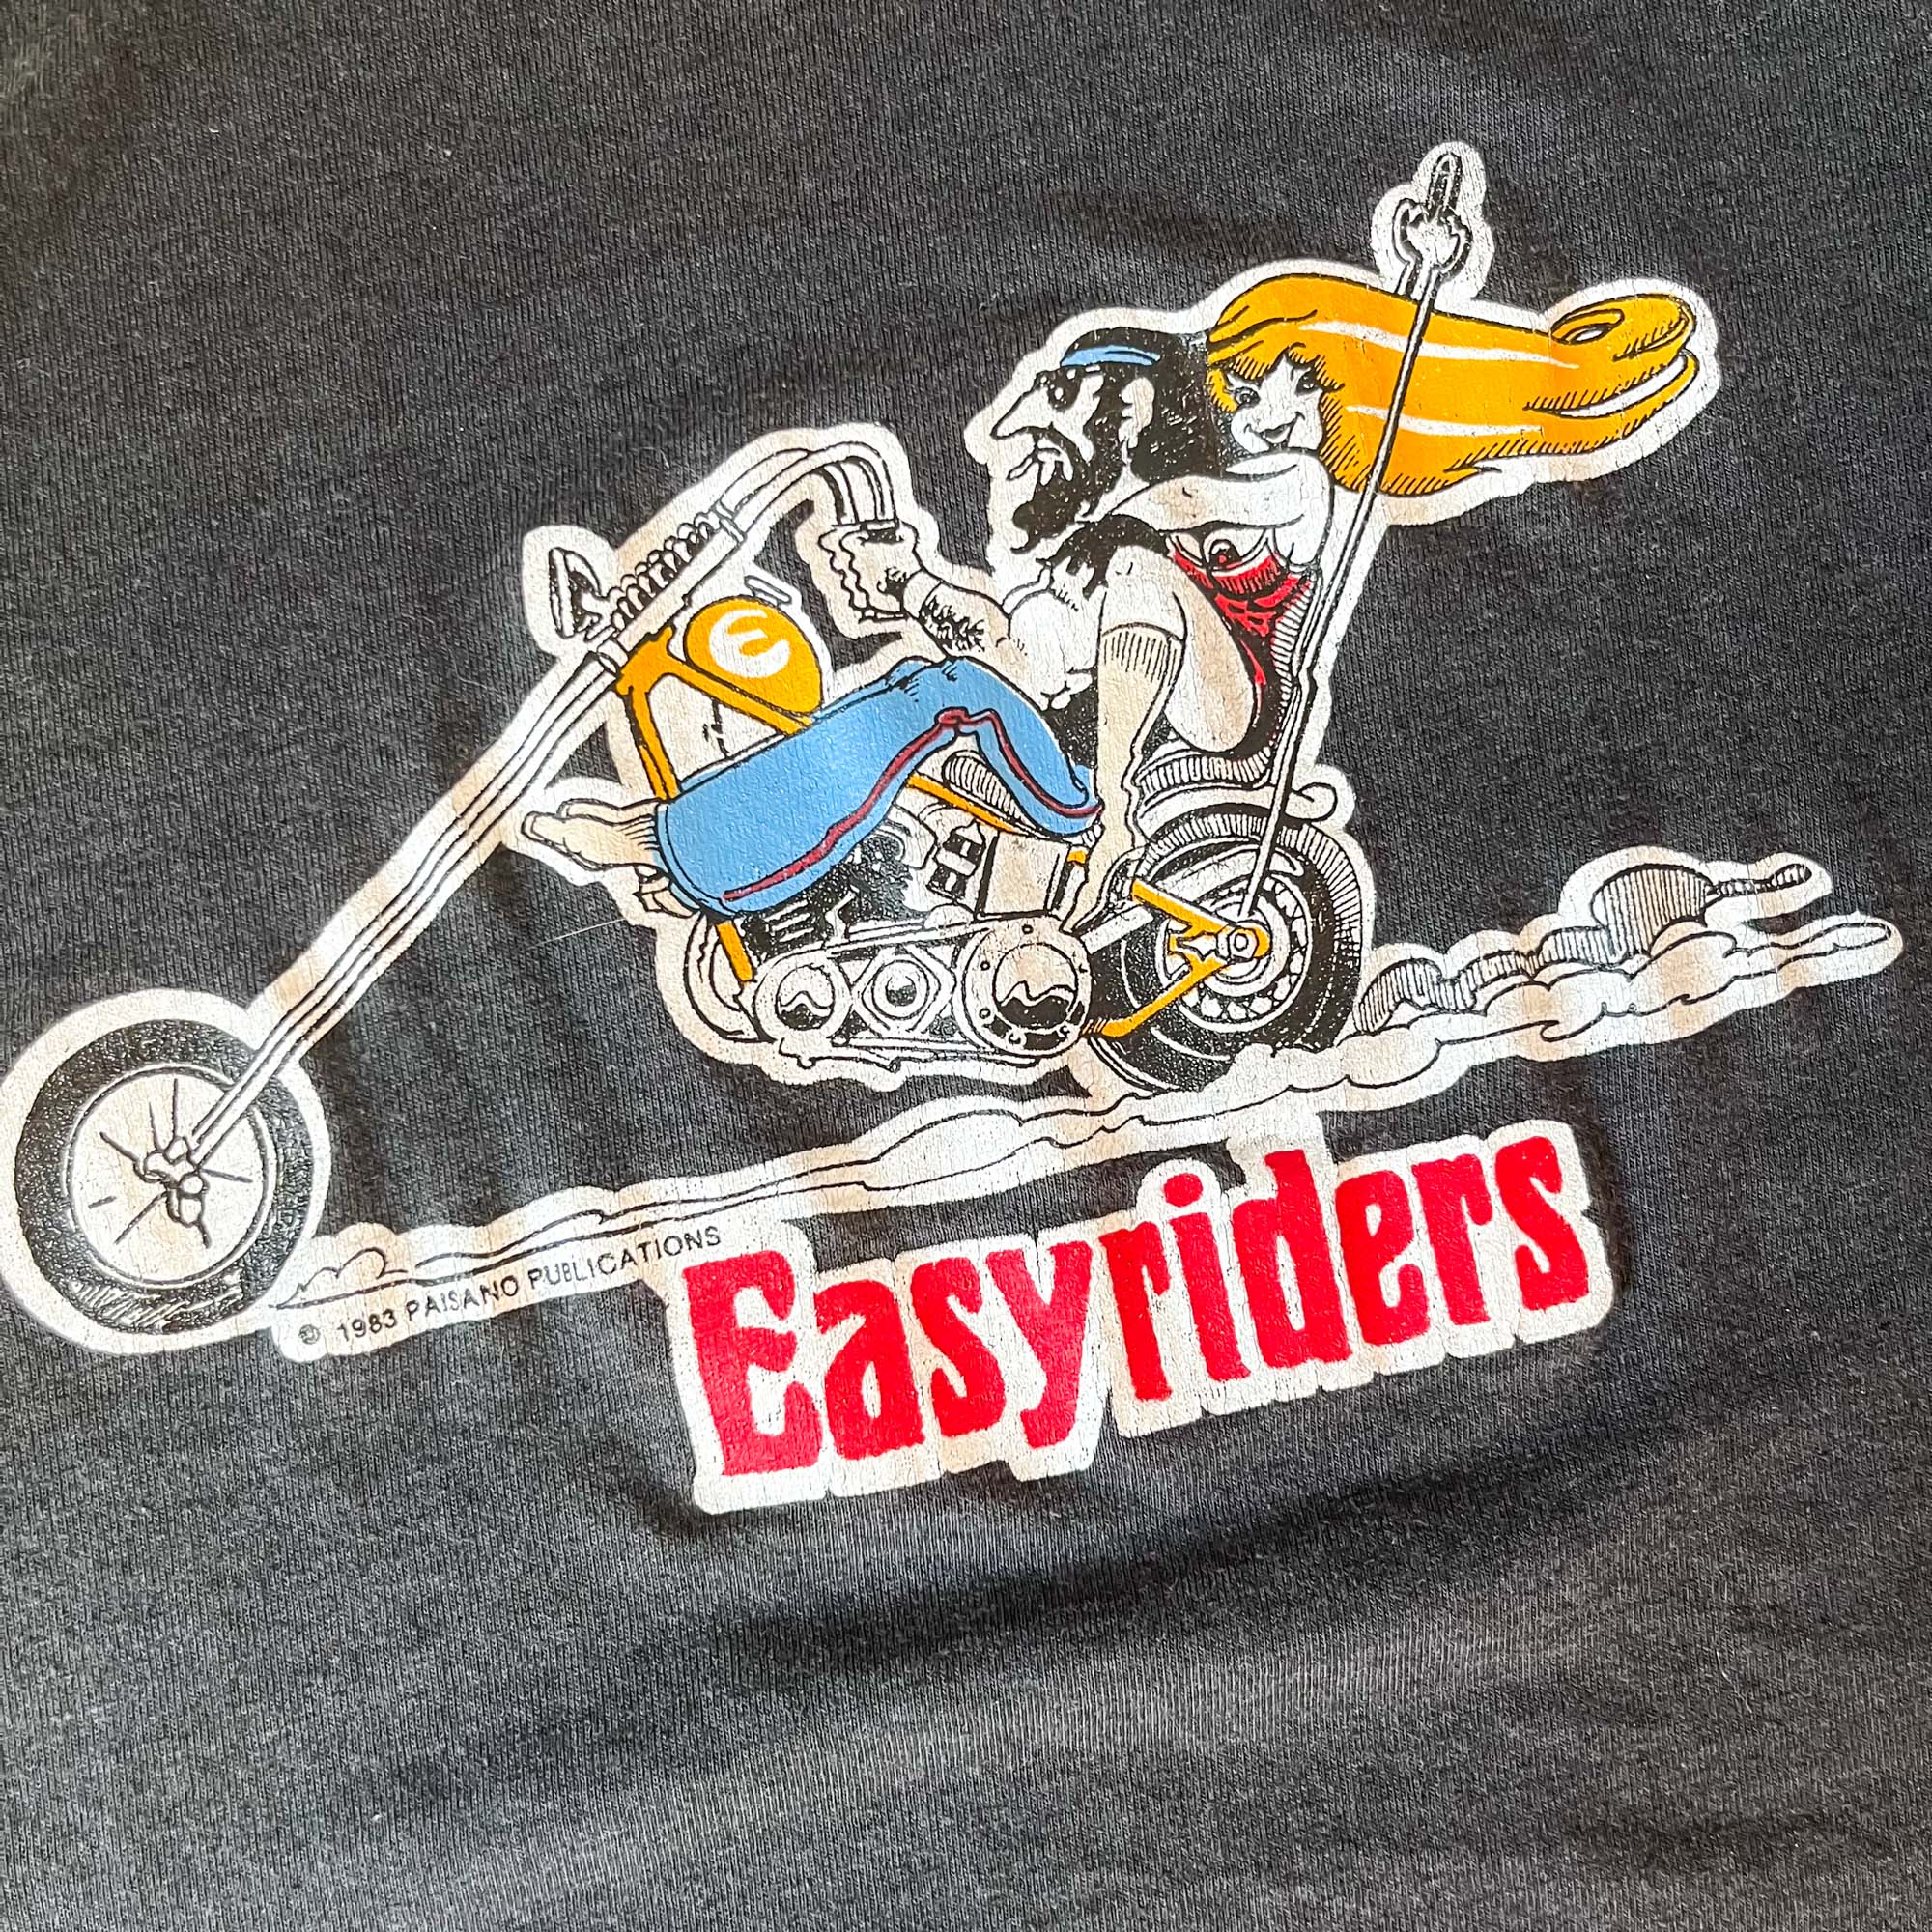 EasyRiders, Tops, Rare Easyriders 2 Years 9 Tshirt